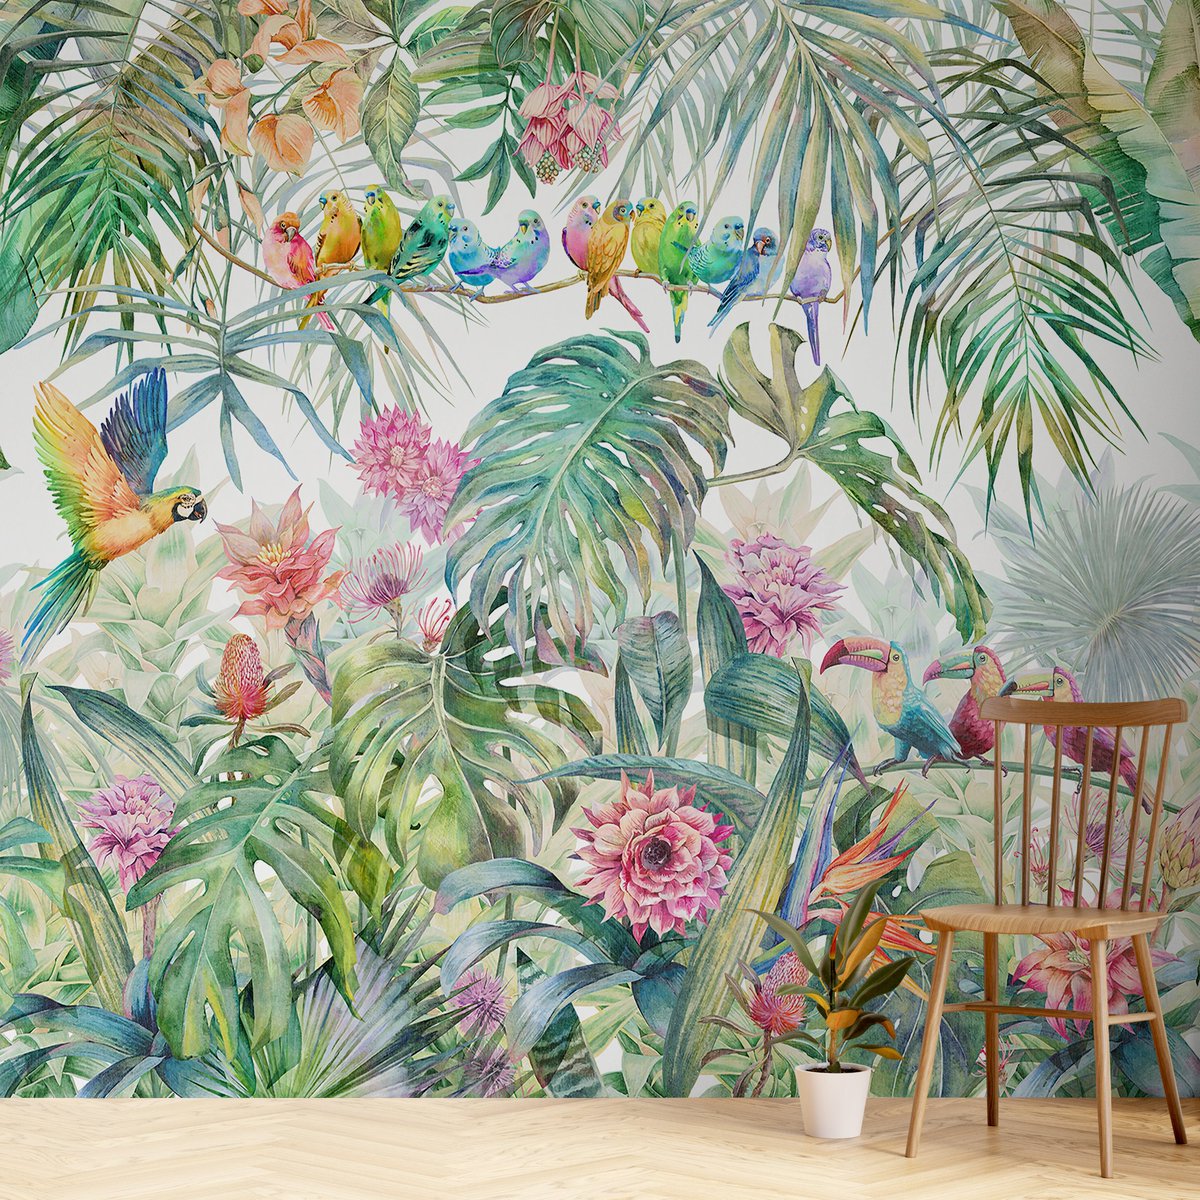 Tropical Forest Birds Wallpaper Mural

#TropicalWallpaper #BirdsMural #NatureDecor #WallArt #HomeDesign #RoomInspiration #WallpaperIdeas #InteriorDesign #TropicalDecor #BirdLovers #WallMural #HomeStyle #NatureMural #WallpaperDesign #DIYHome 

bit.ly/47m2df1